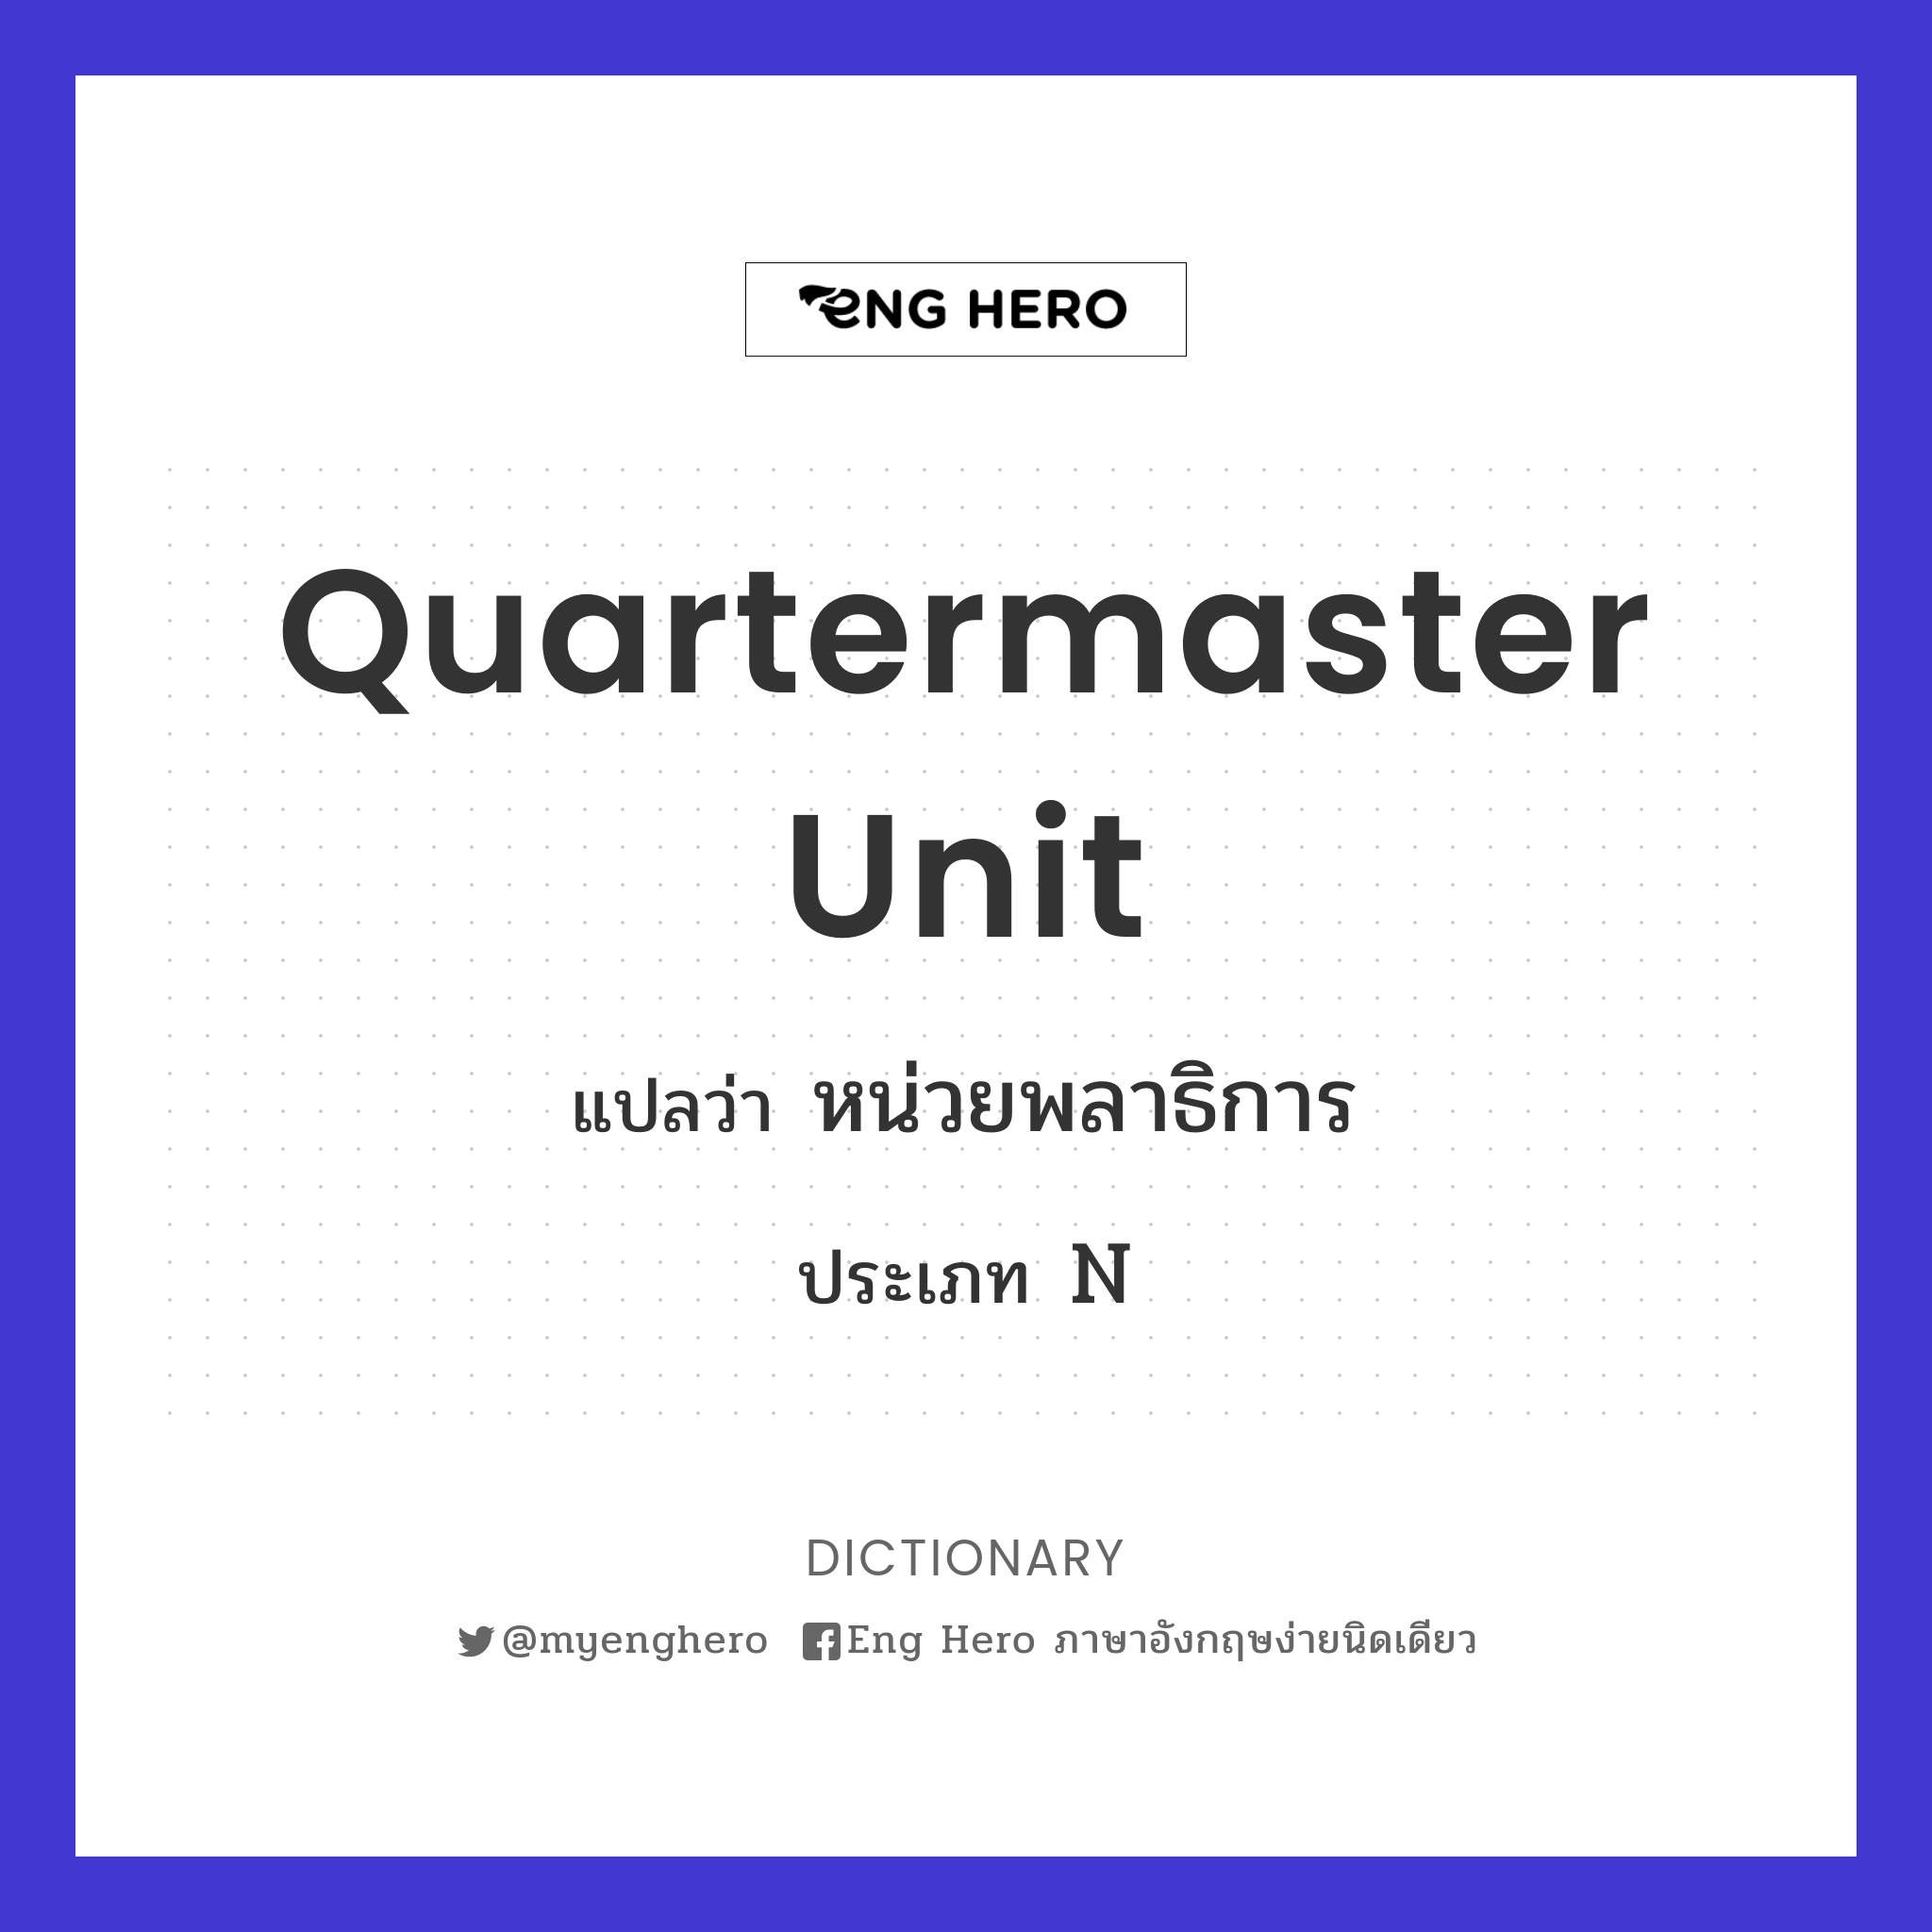 Quartermaster unit